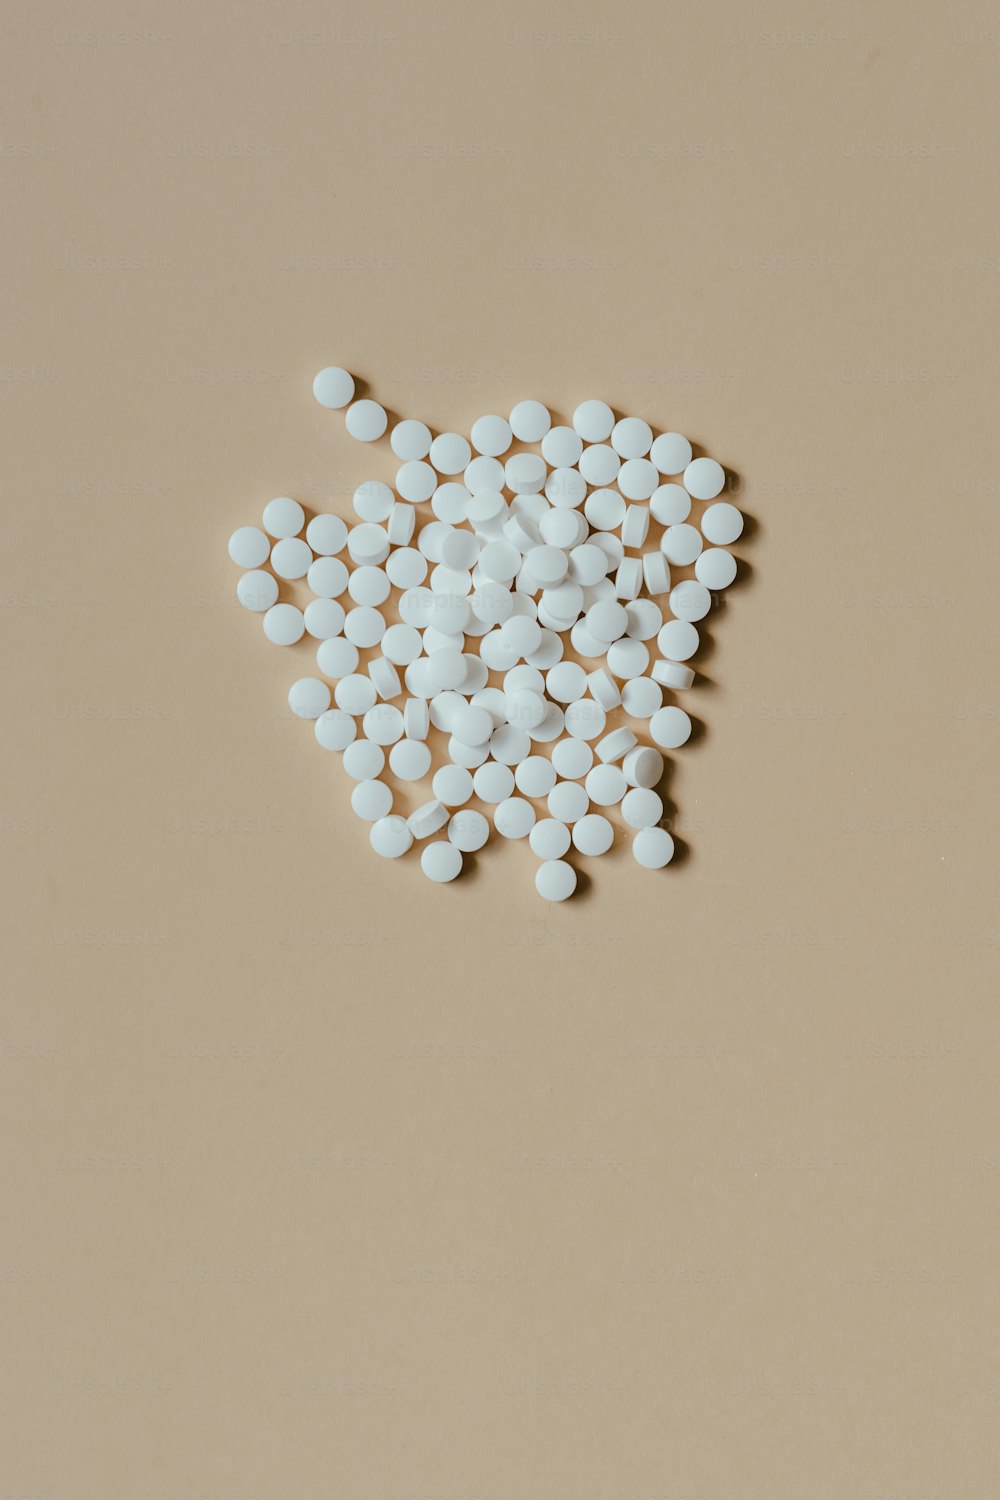 une pile de pilules blanches assises sur une table